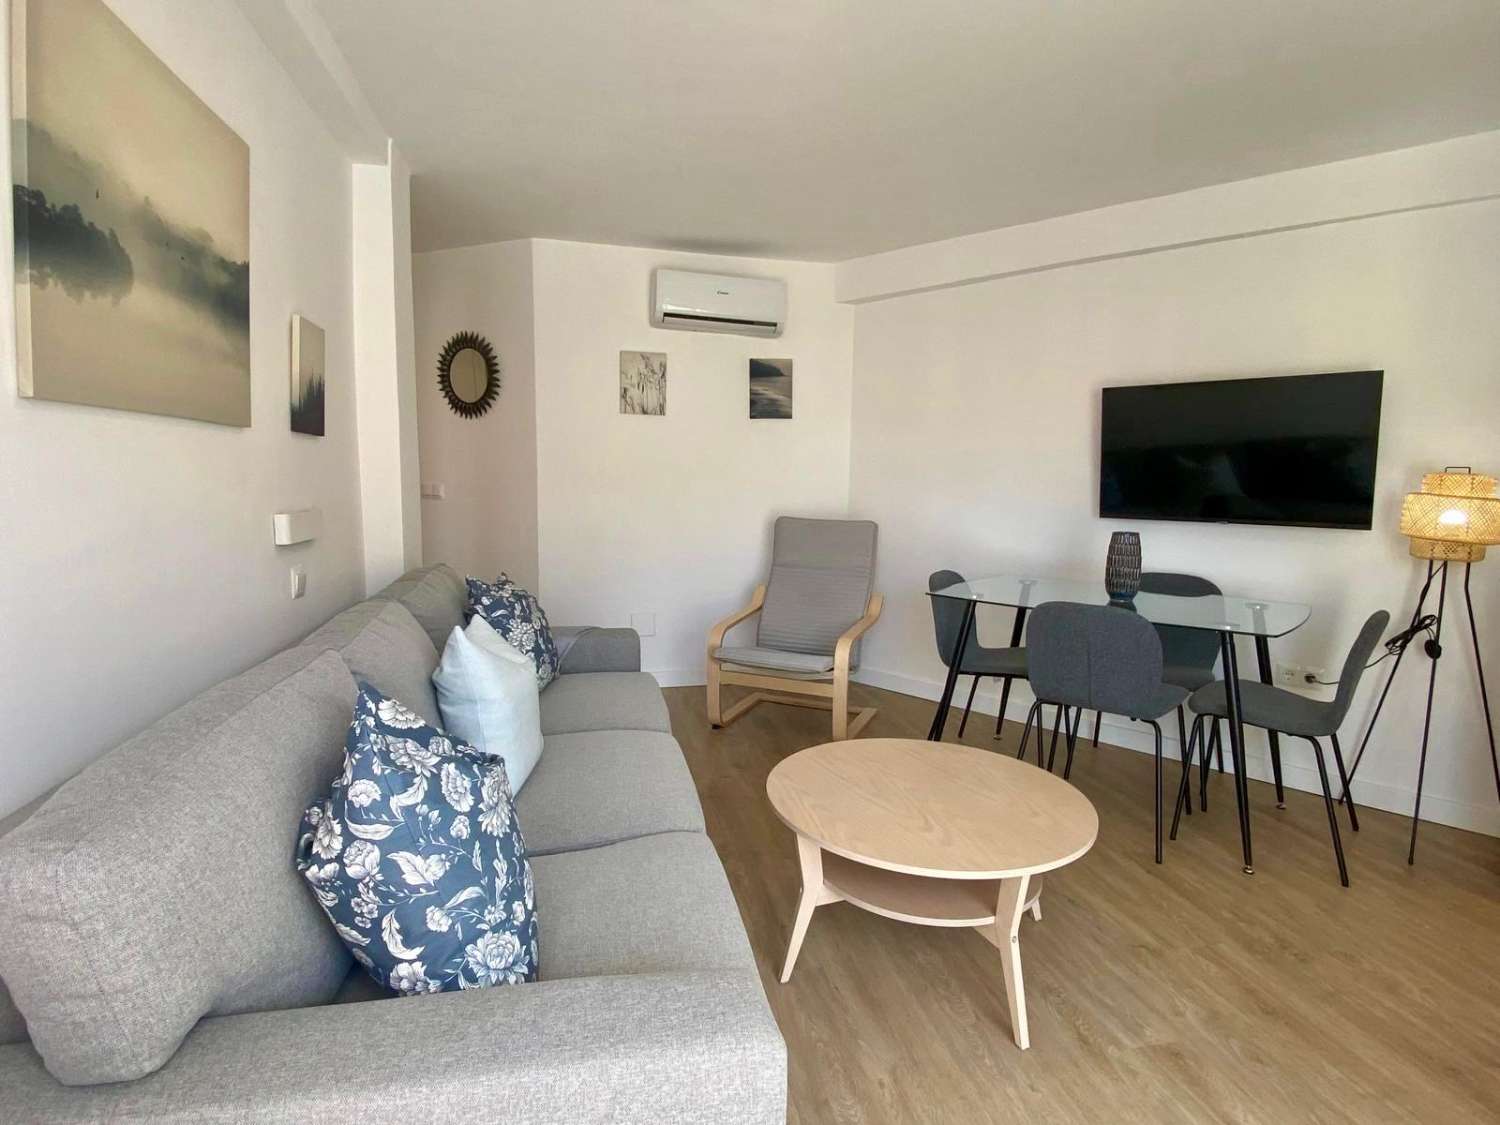 Bonito y céntrico apartamento reformado de dos dormitorios en Nerja